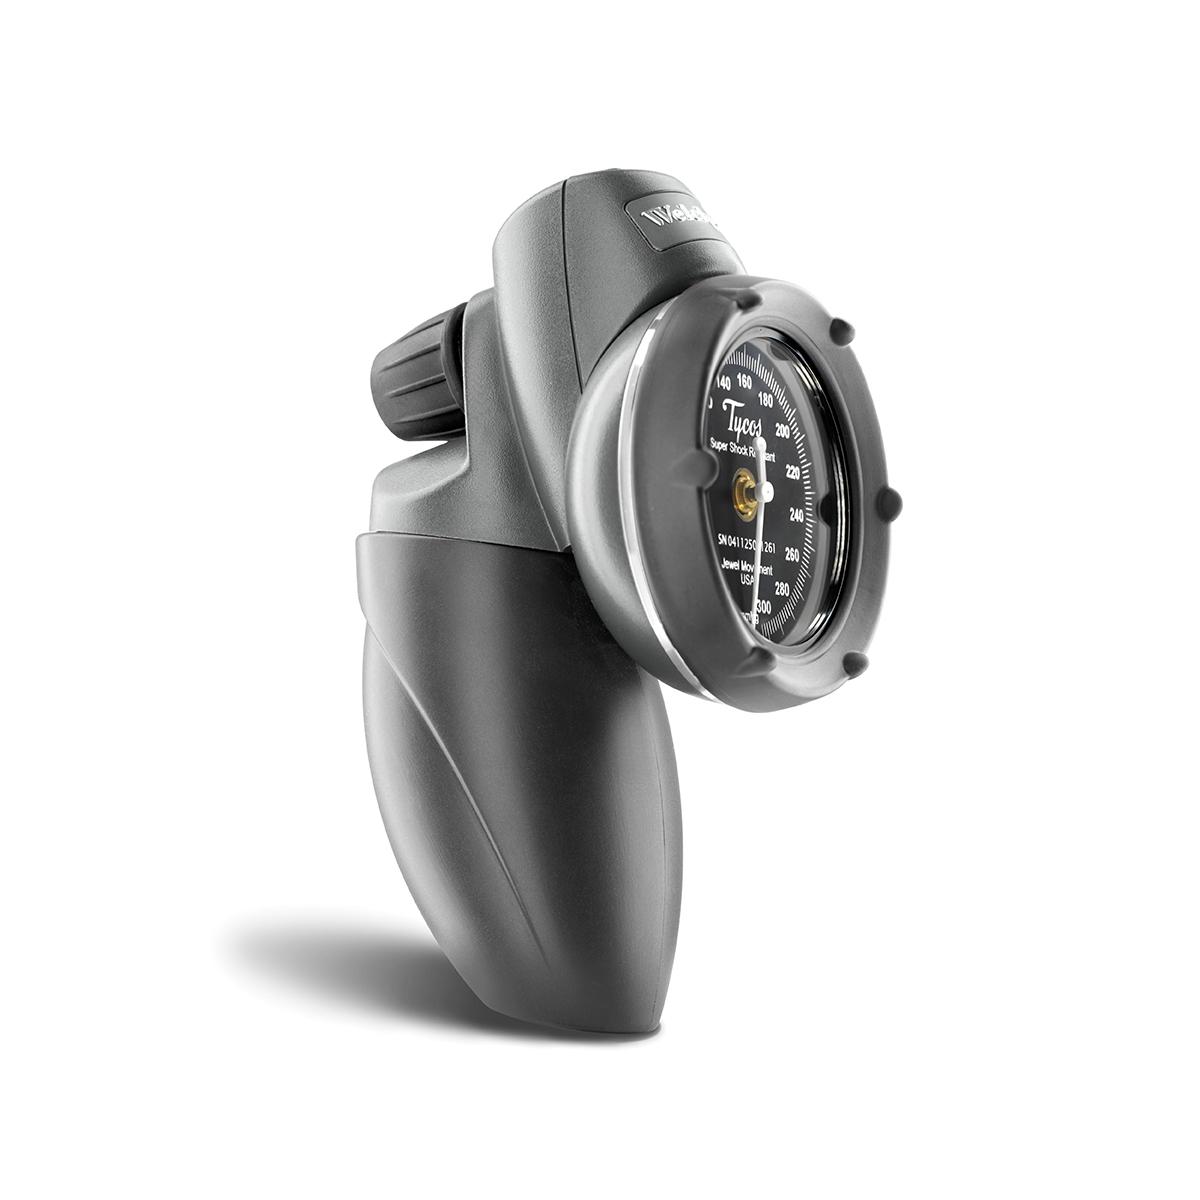 Welch Allyn Platinum Series DS58 Hand Aneroid สีดำ มาพร้อมกับอุปกรณ์สูบลมและวาล์วไล่ลมด้วยการขันสกรู